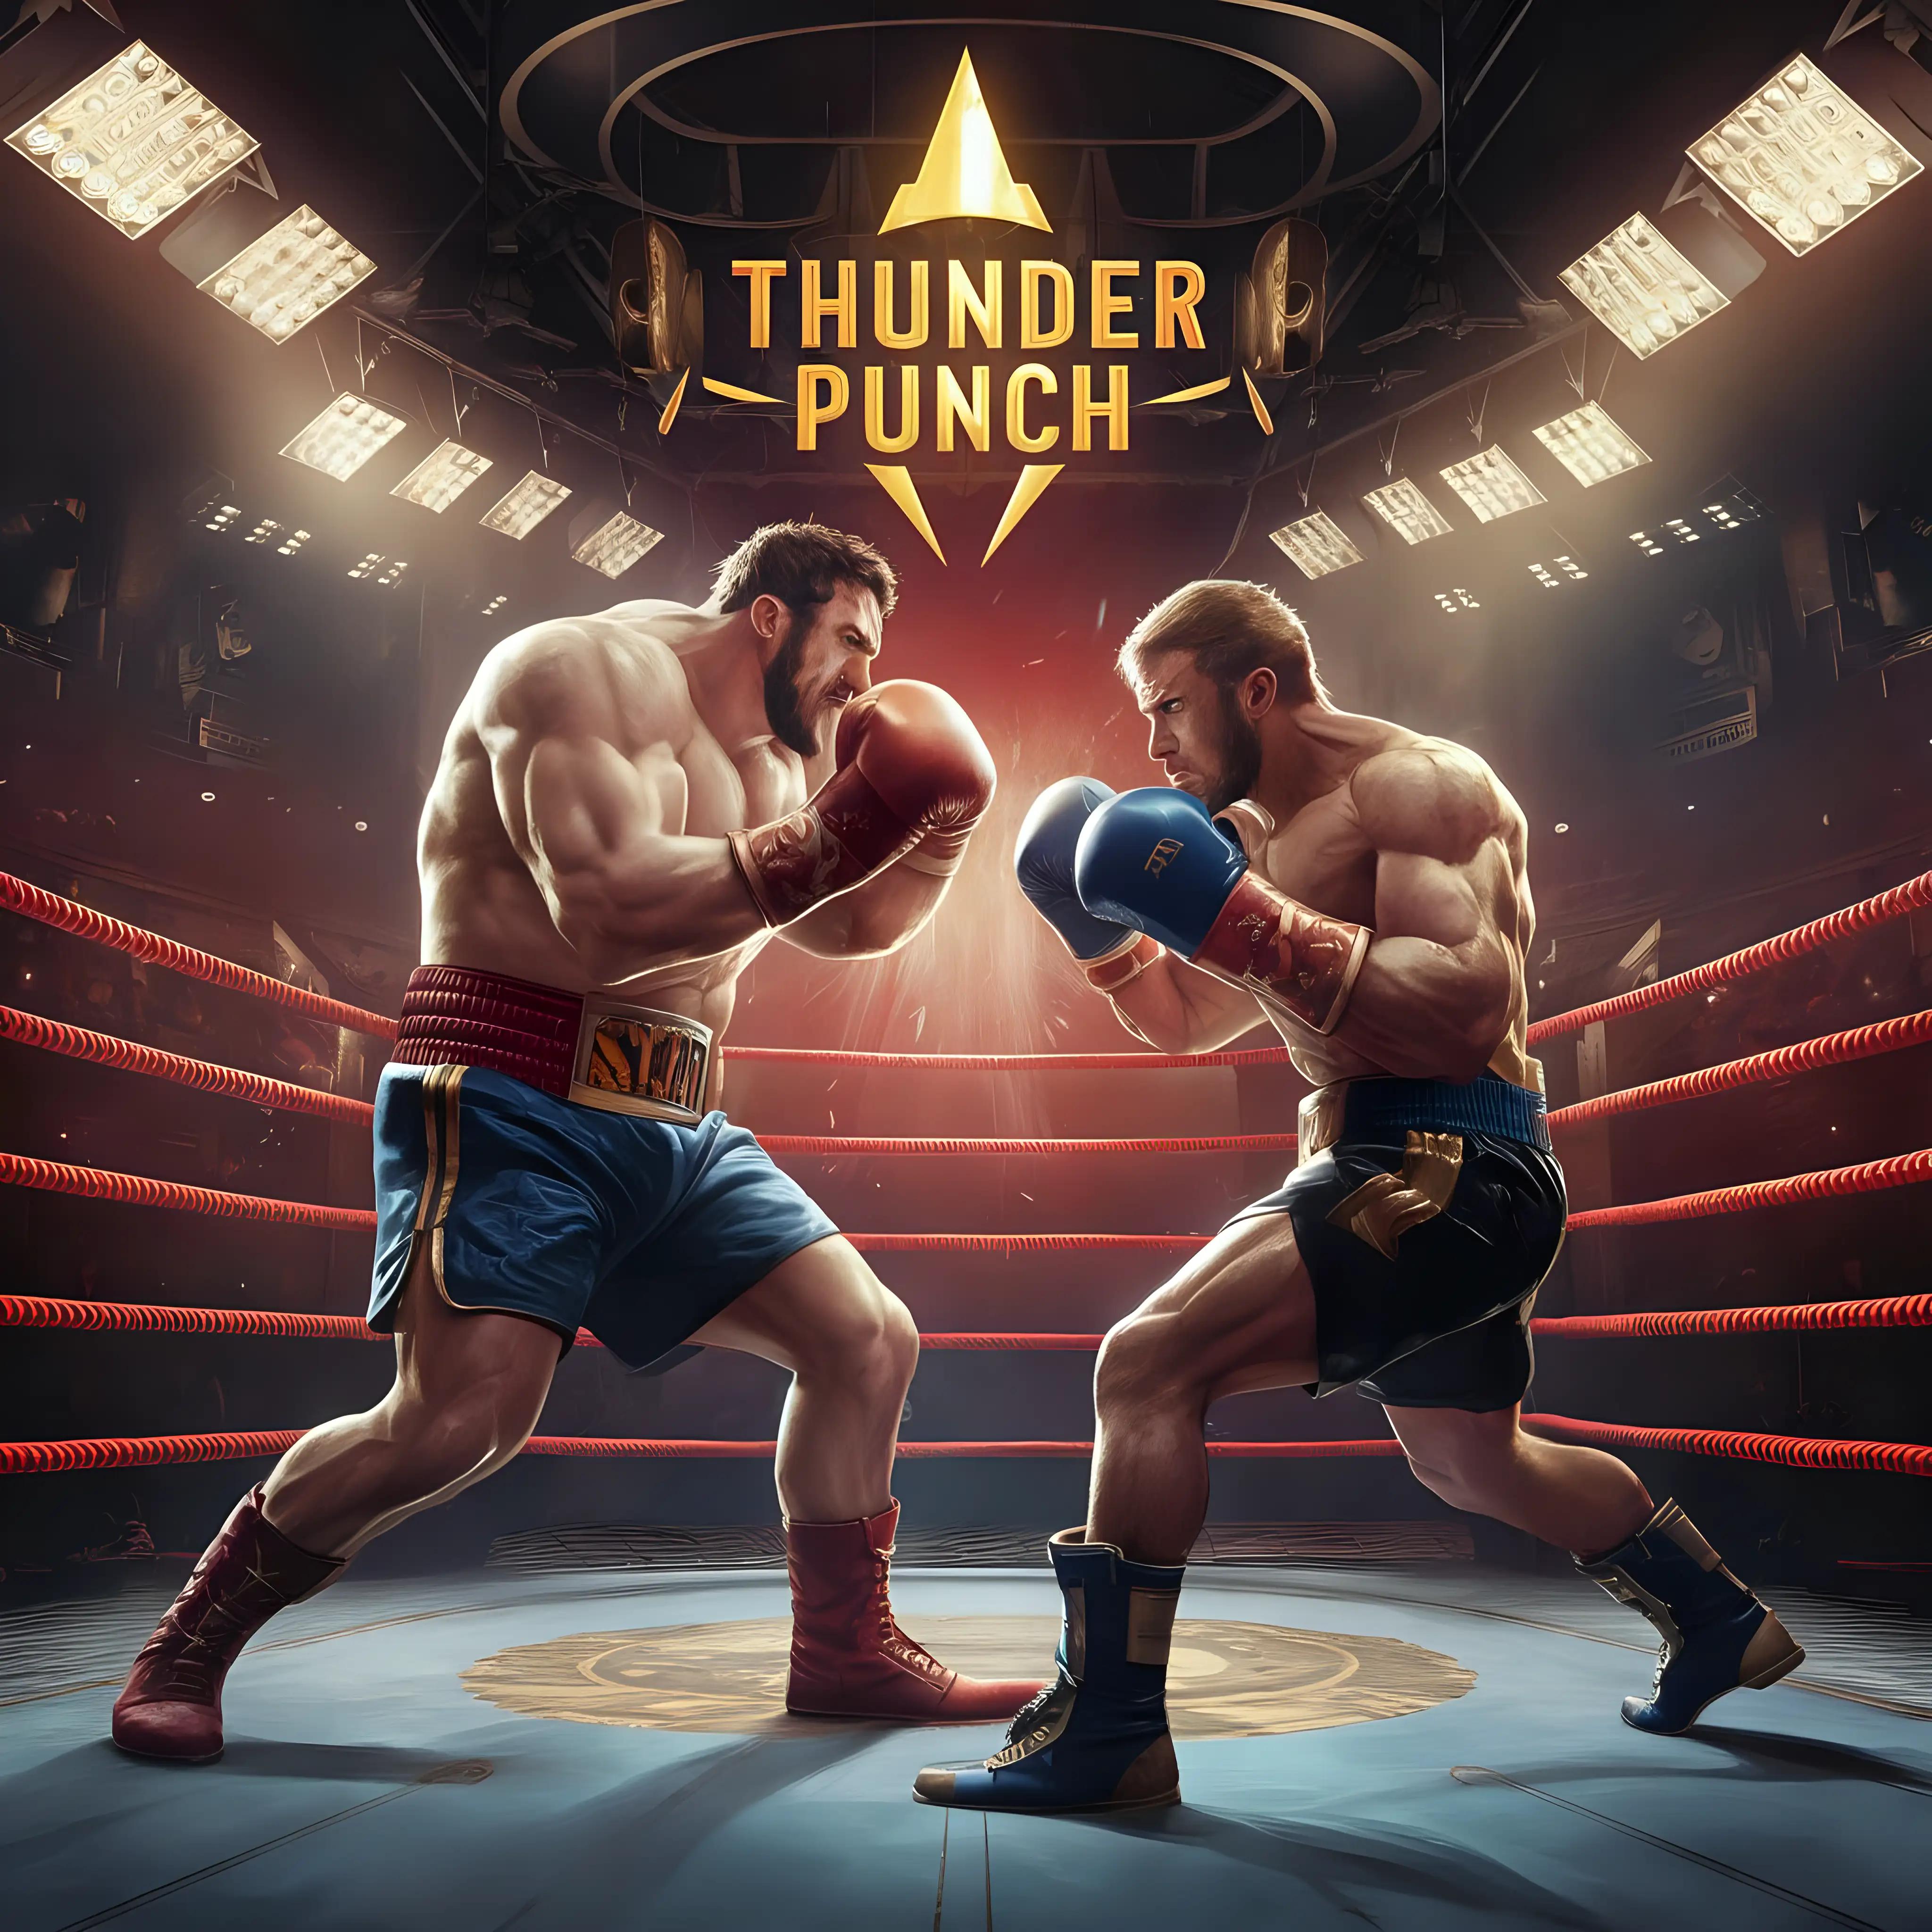 L'entête du livret de règles de "Thunder Punch" présente une illustration dynamique qui capture l'essence même de l'action et de l'excitation du jeu. Au centre de l'image, un ring de boxe imposant occupe une place prépondérante, ses cordes tendues et ses coins éclairés par les projecteurs.

Sur le ring, deux boxeurs se font face, prêts à en découdre dans un combat épique. Le premier boxeur incarne la force brute et la puissance du style Puncheur (Slugger), ses muscles tendus et son regard déterminé témoignant de sa détermination à remporter la victoire.

En face de lui, son adversaire représente l'agilité et la stratégie du style Boxer (Technician). Sa posture est fluide et gracieuse, montrant sa confiance en ses compétences de défense et de contre-attaque.

Autour du ring, le public est représenté en ombres floues dans les gradins, leur agitation et leur excitation se manifestant par des silhouettes floues et des mouvements de bras. Les projecteurs illuminent le ring, ajoutant une touche de dynamisme et de réalisme à la scène.

Dans le coin supérieur droit de l'illustration, le logo de "Thunder Punch" brille en lettres audacieuses et éclatantes, captant l'attention du lecteur avec son style accrocheur.

Dans l'ensemble, l'illustration de l'entête du livret de règles de "Thunder Punch" donne un avant-goût de l'action palpitante qui attend les joueurs sur le ring, tout en capturant l'essence de l'univers de la boxe avec style et panache.